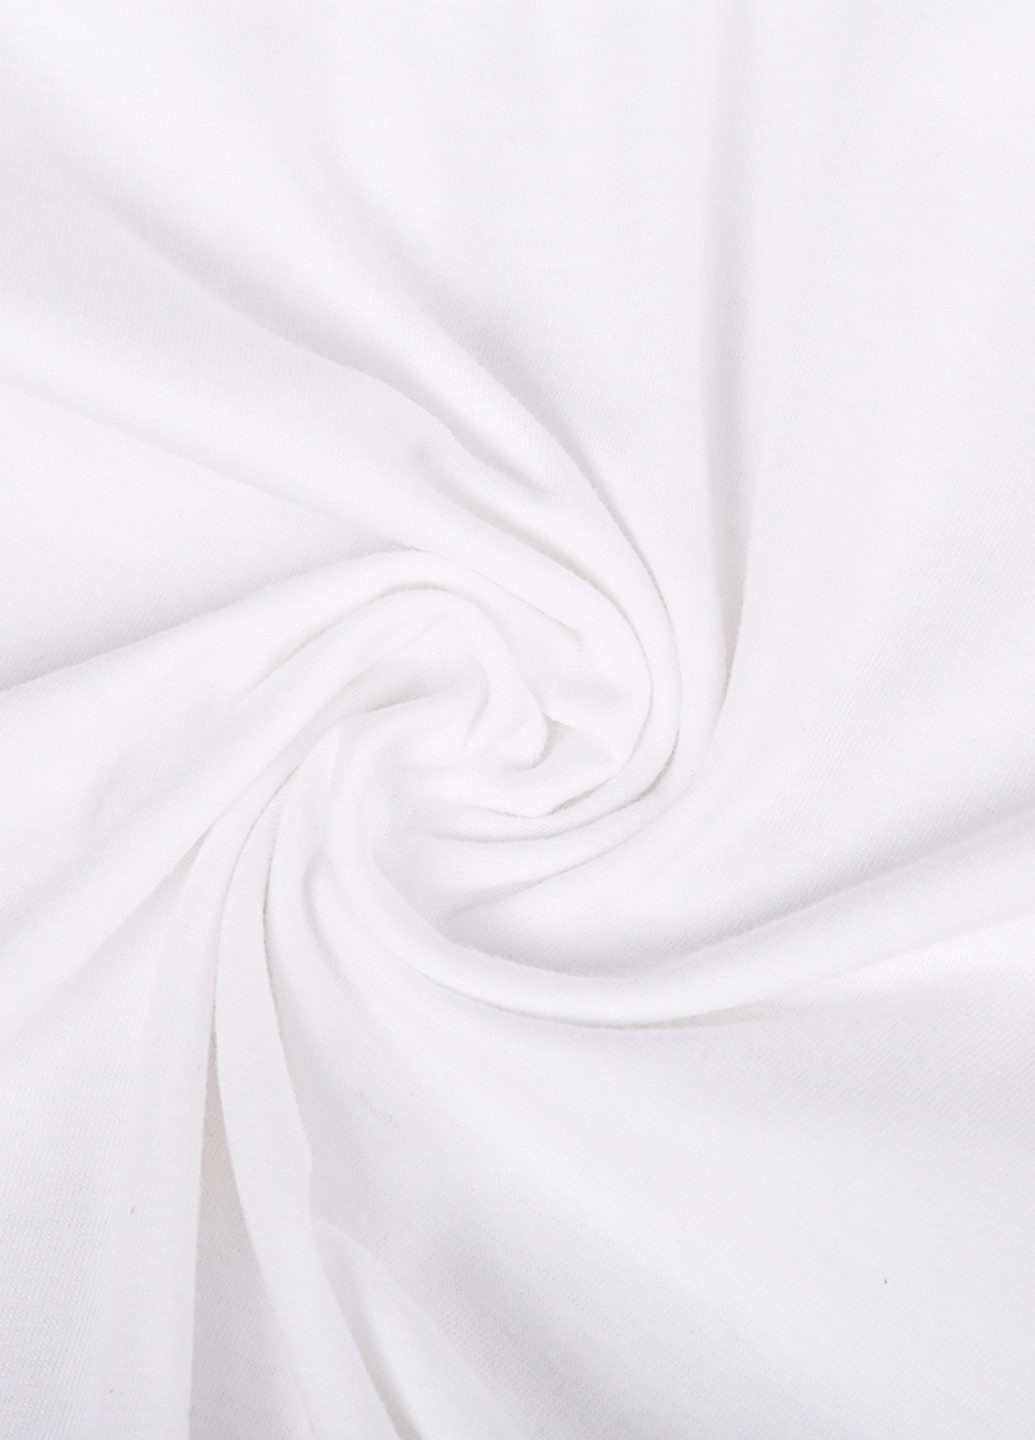 Белая демисезонная футболка детская пубг (pubg) белый (9224-1187) 164 см MobiPrint